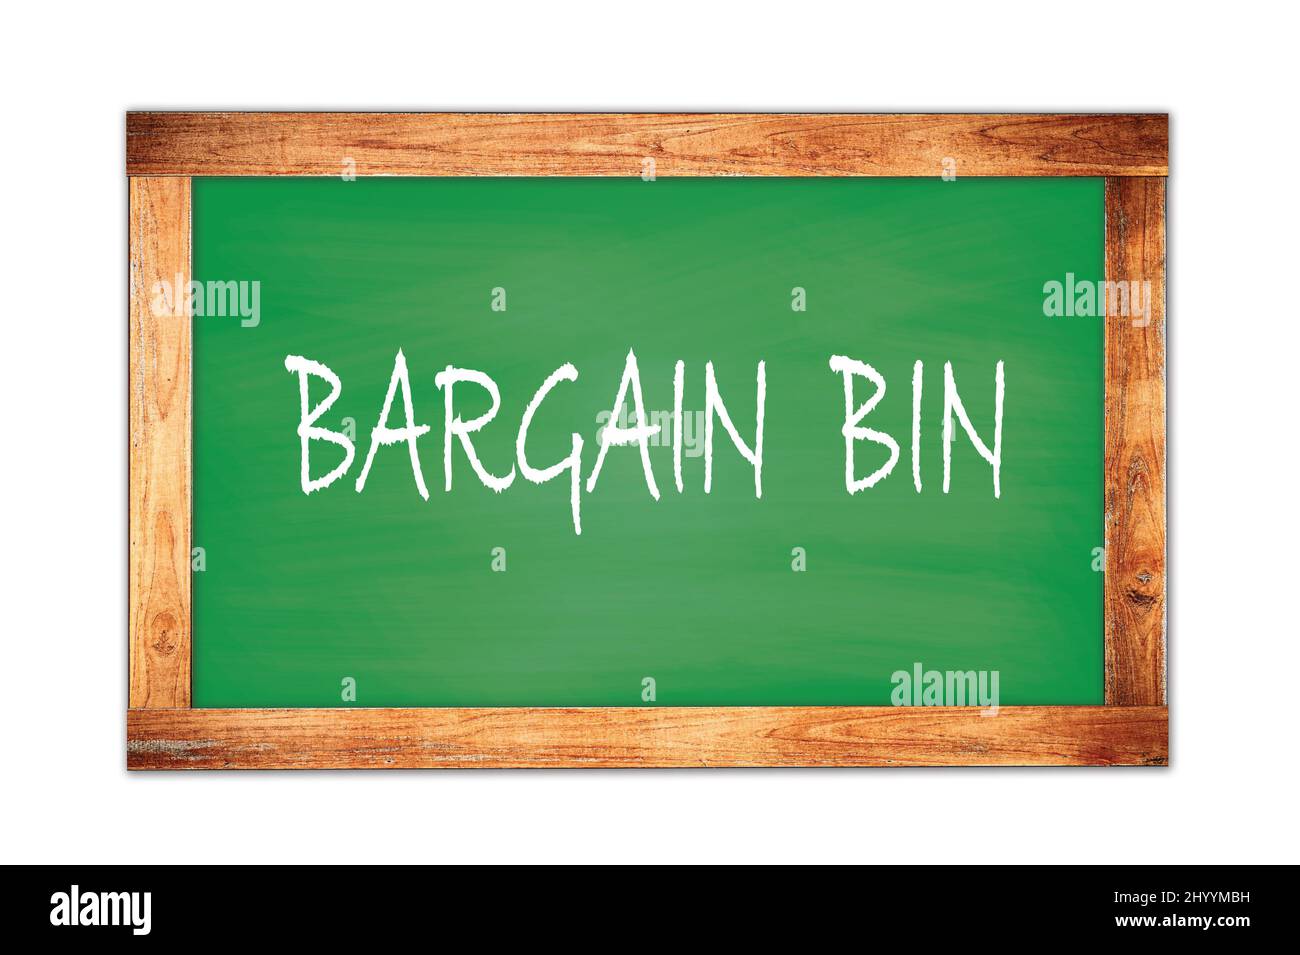 BARGAIN  BIN text written on green wooden frame school blackboard. Stock Photo